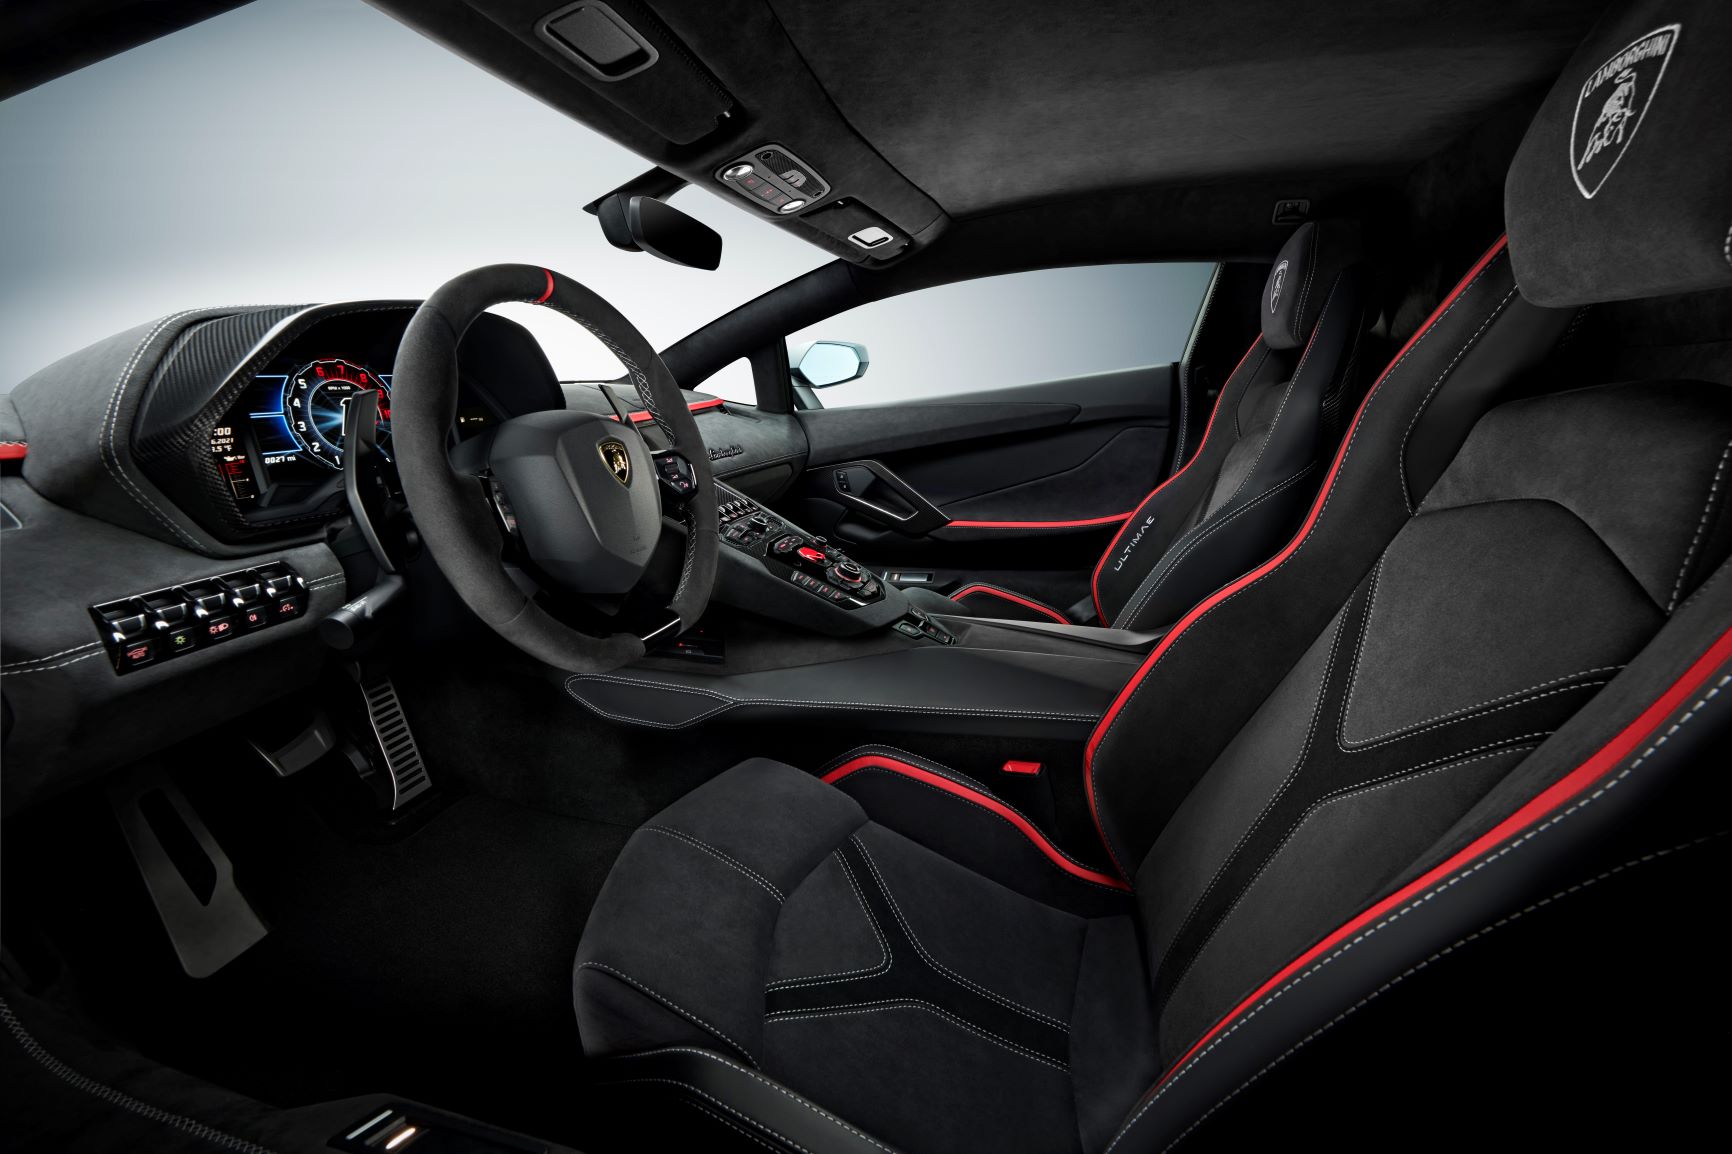 Interior of the Lamborghini Aventador Ultimae